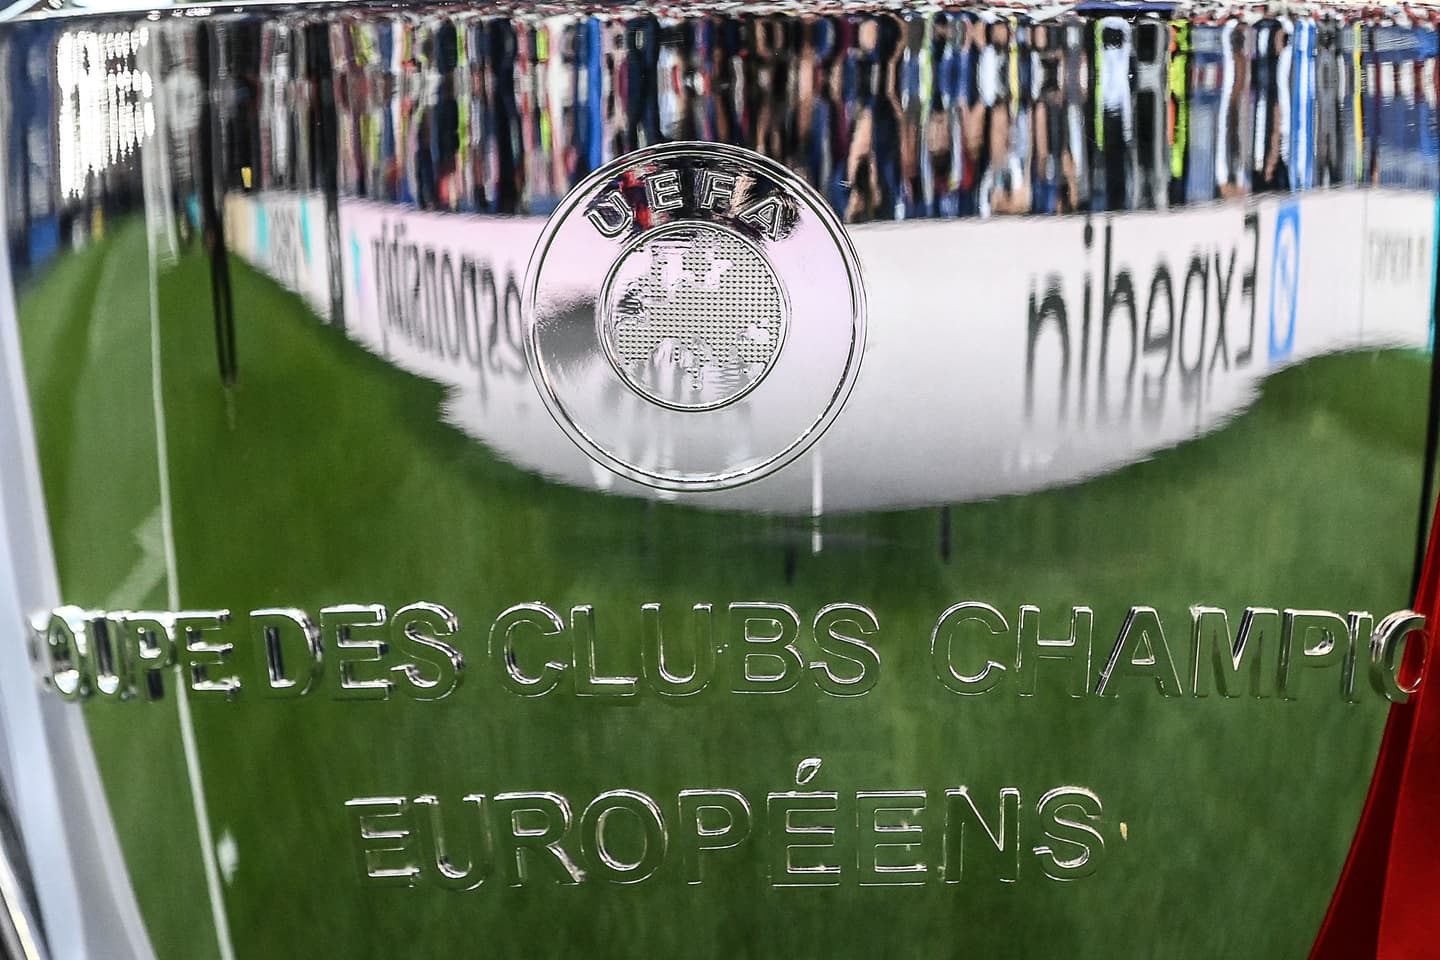 Champions League: lista de campeones por año y palmarés con todos